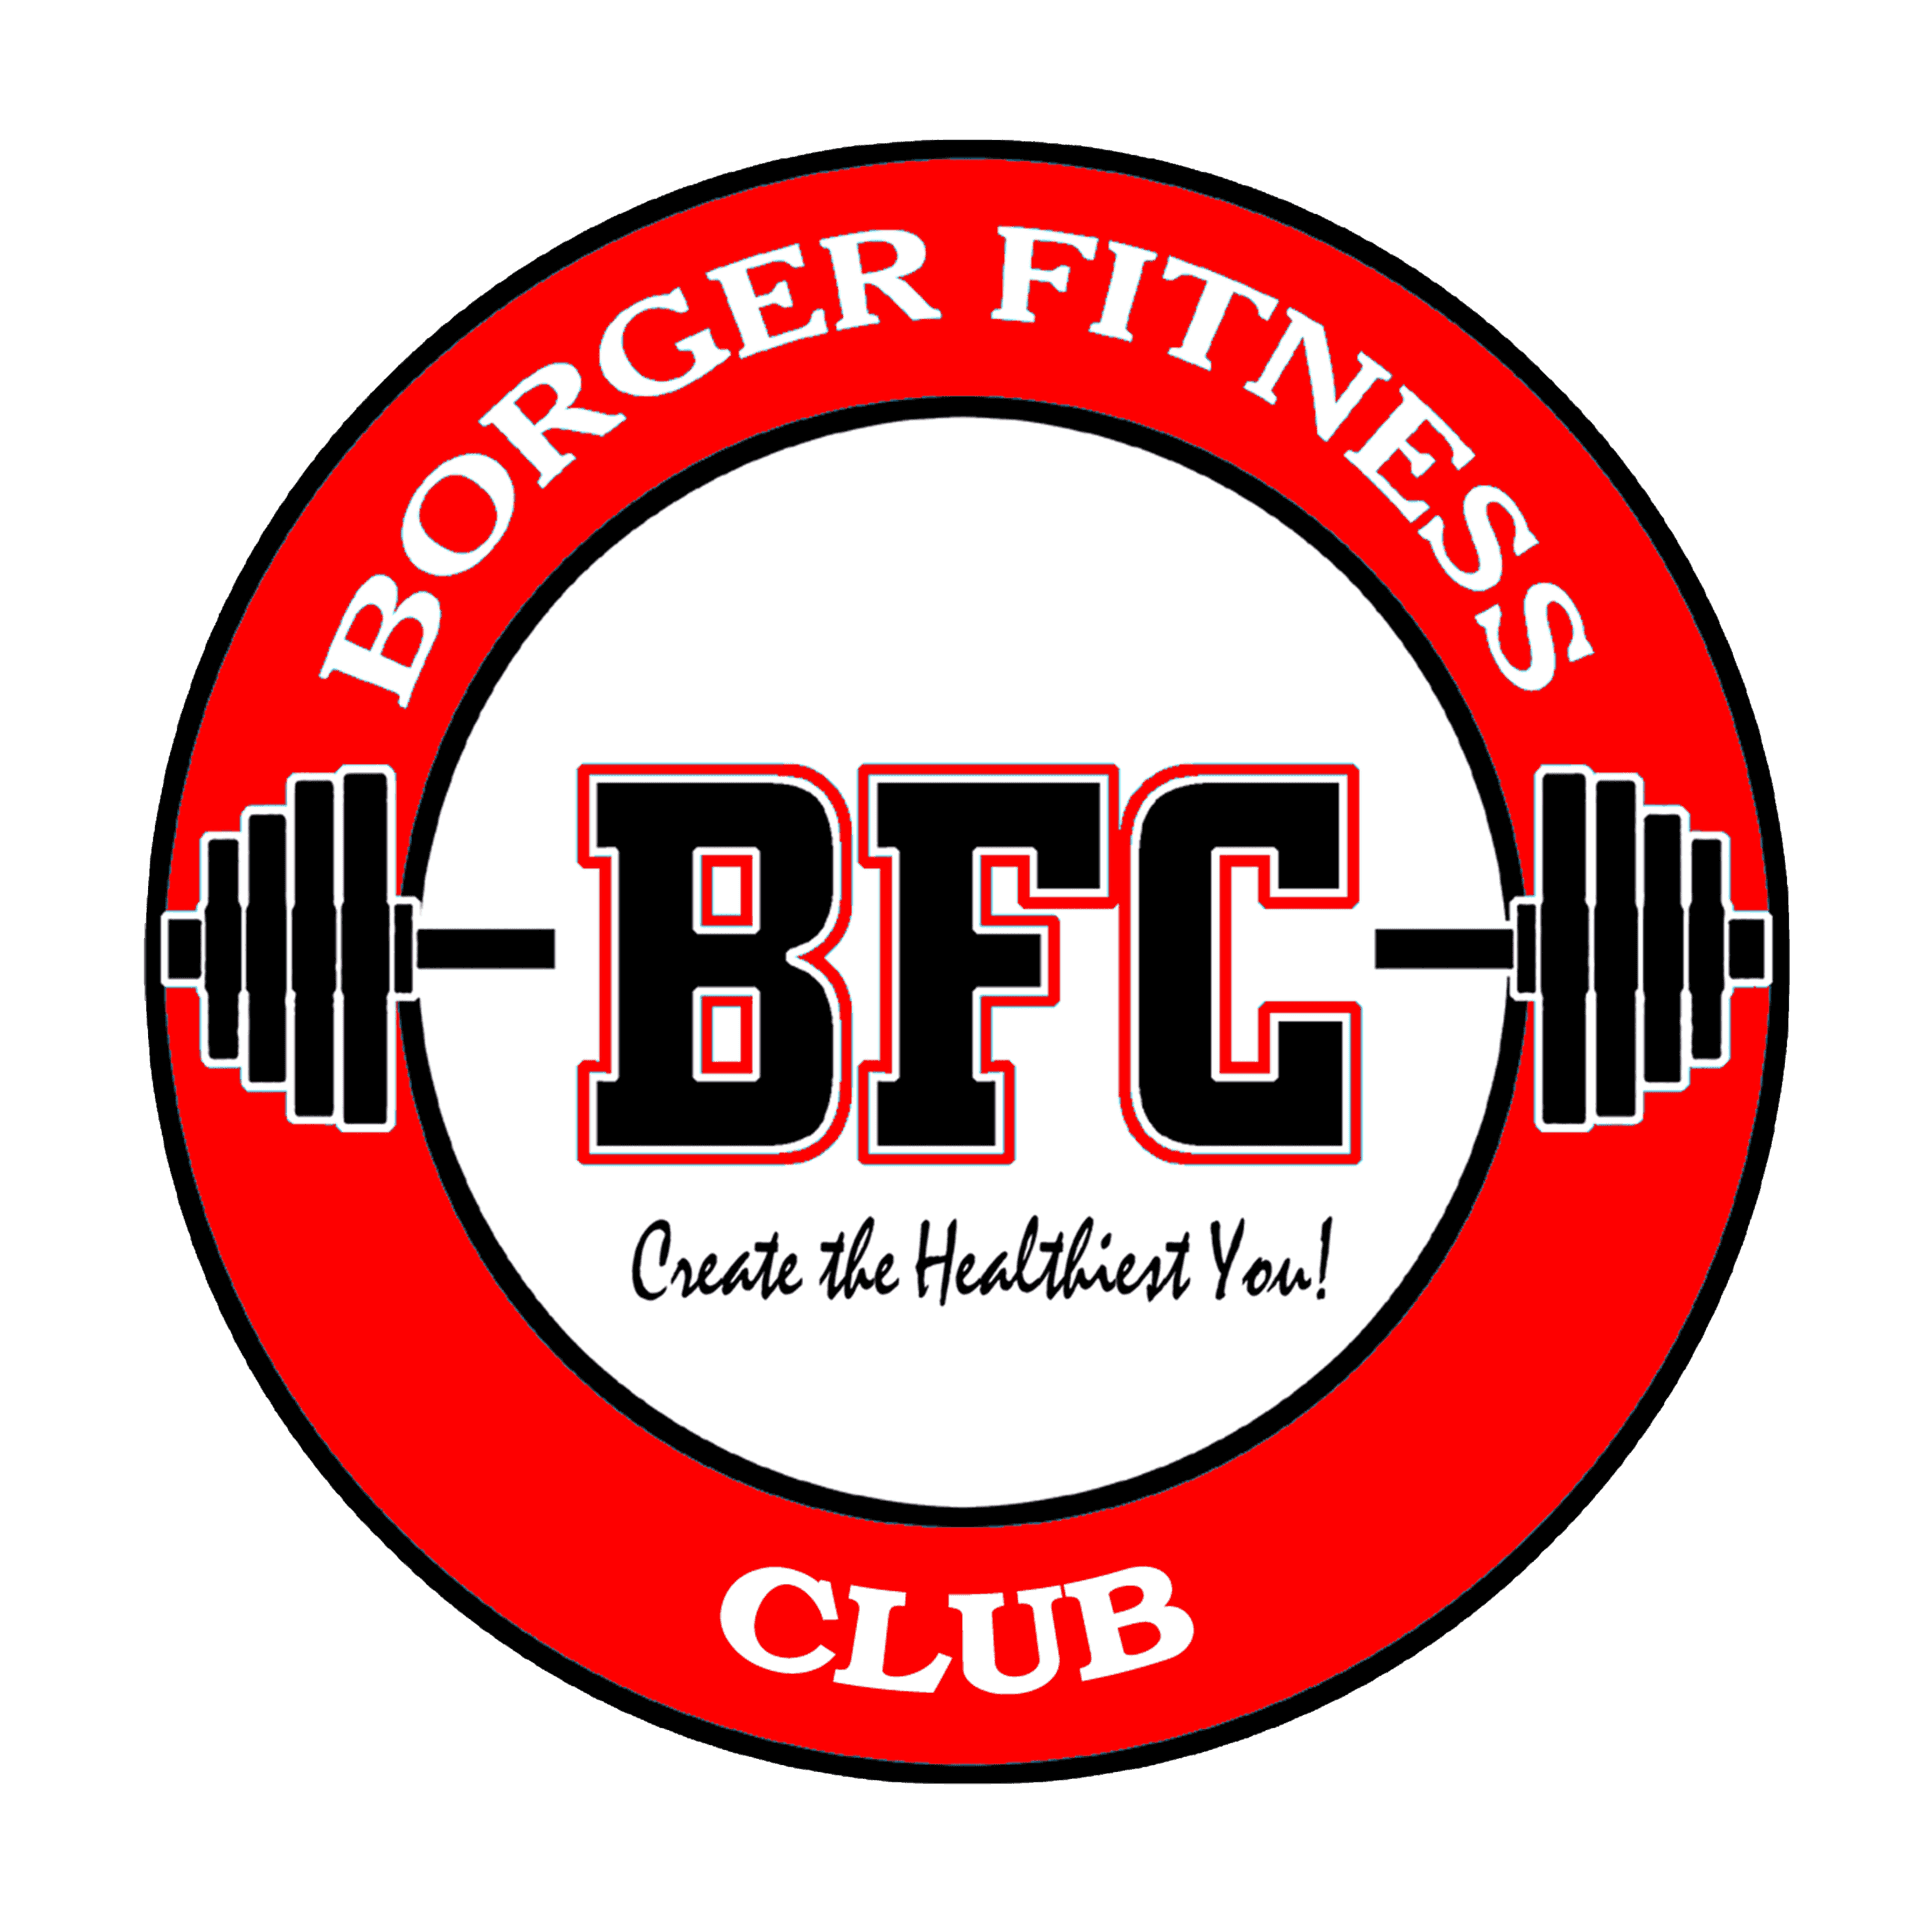 Borger Fitness Club - Logo